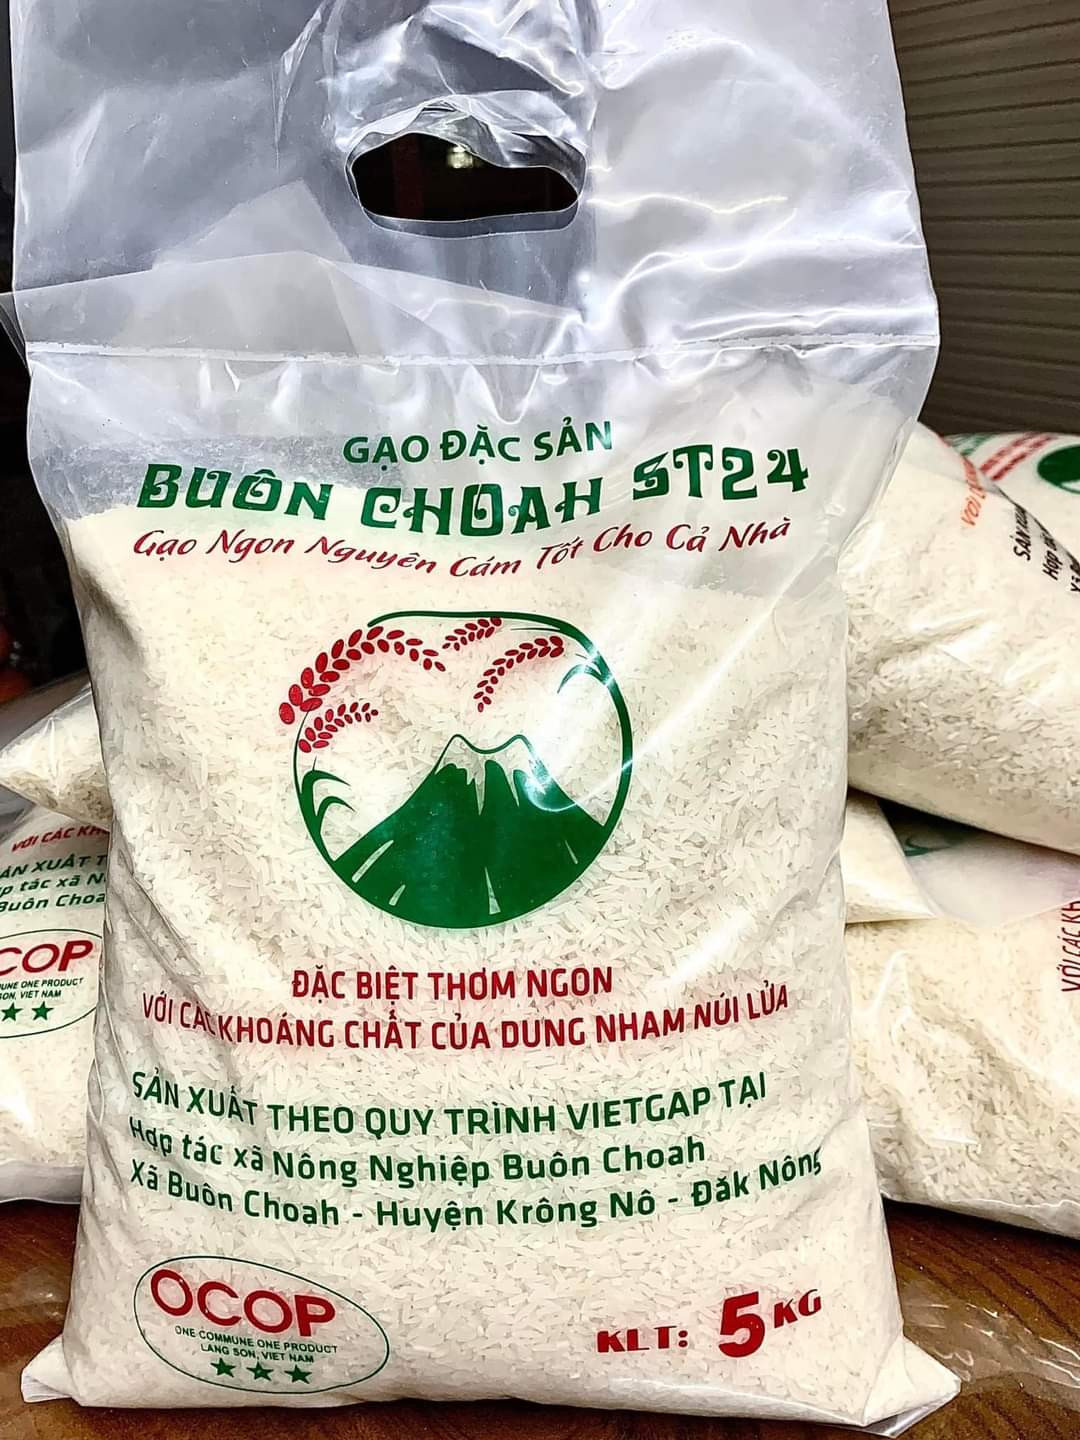 Điều gì làm nên chất lượng đặc biệt của lúa gạo Buôn Choah? - Ảnh 4.